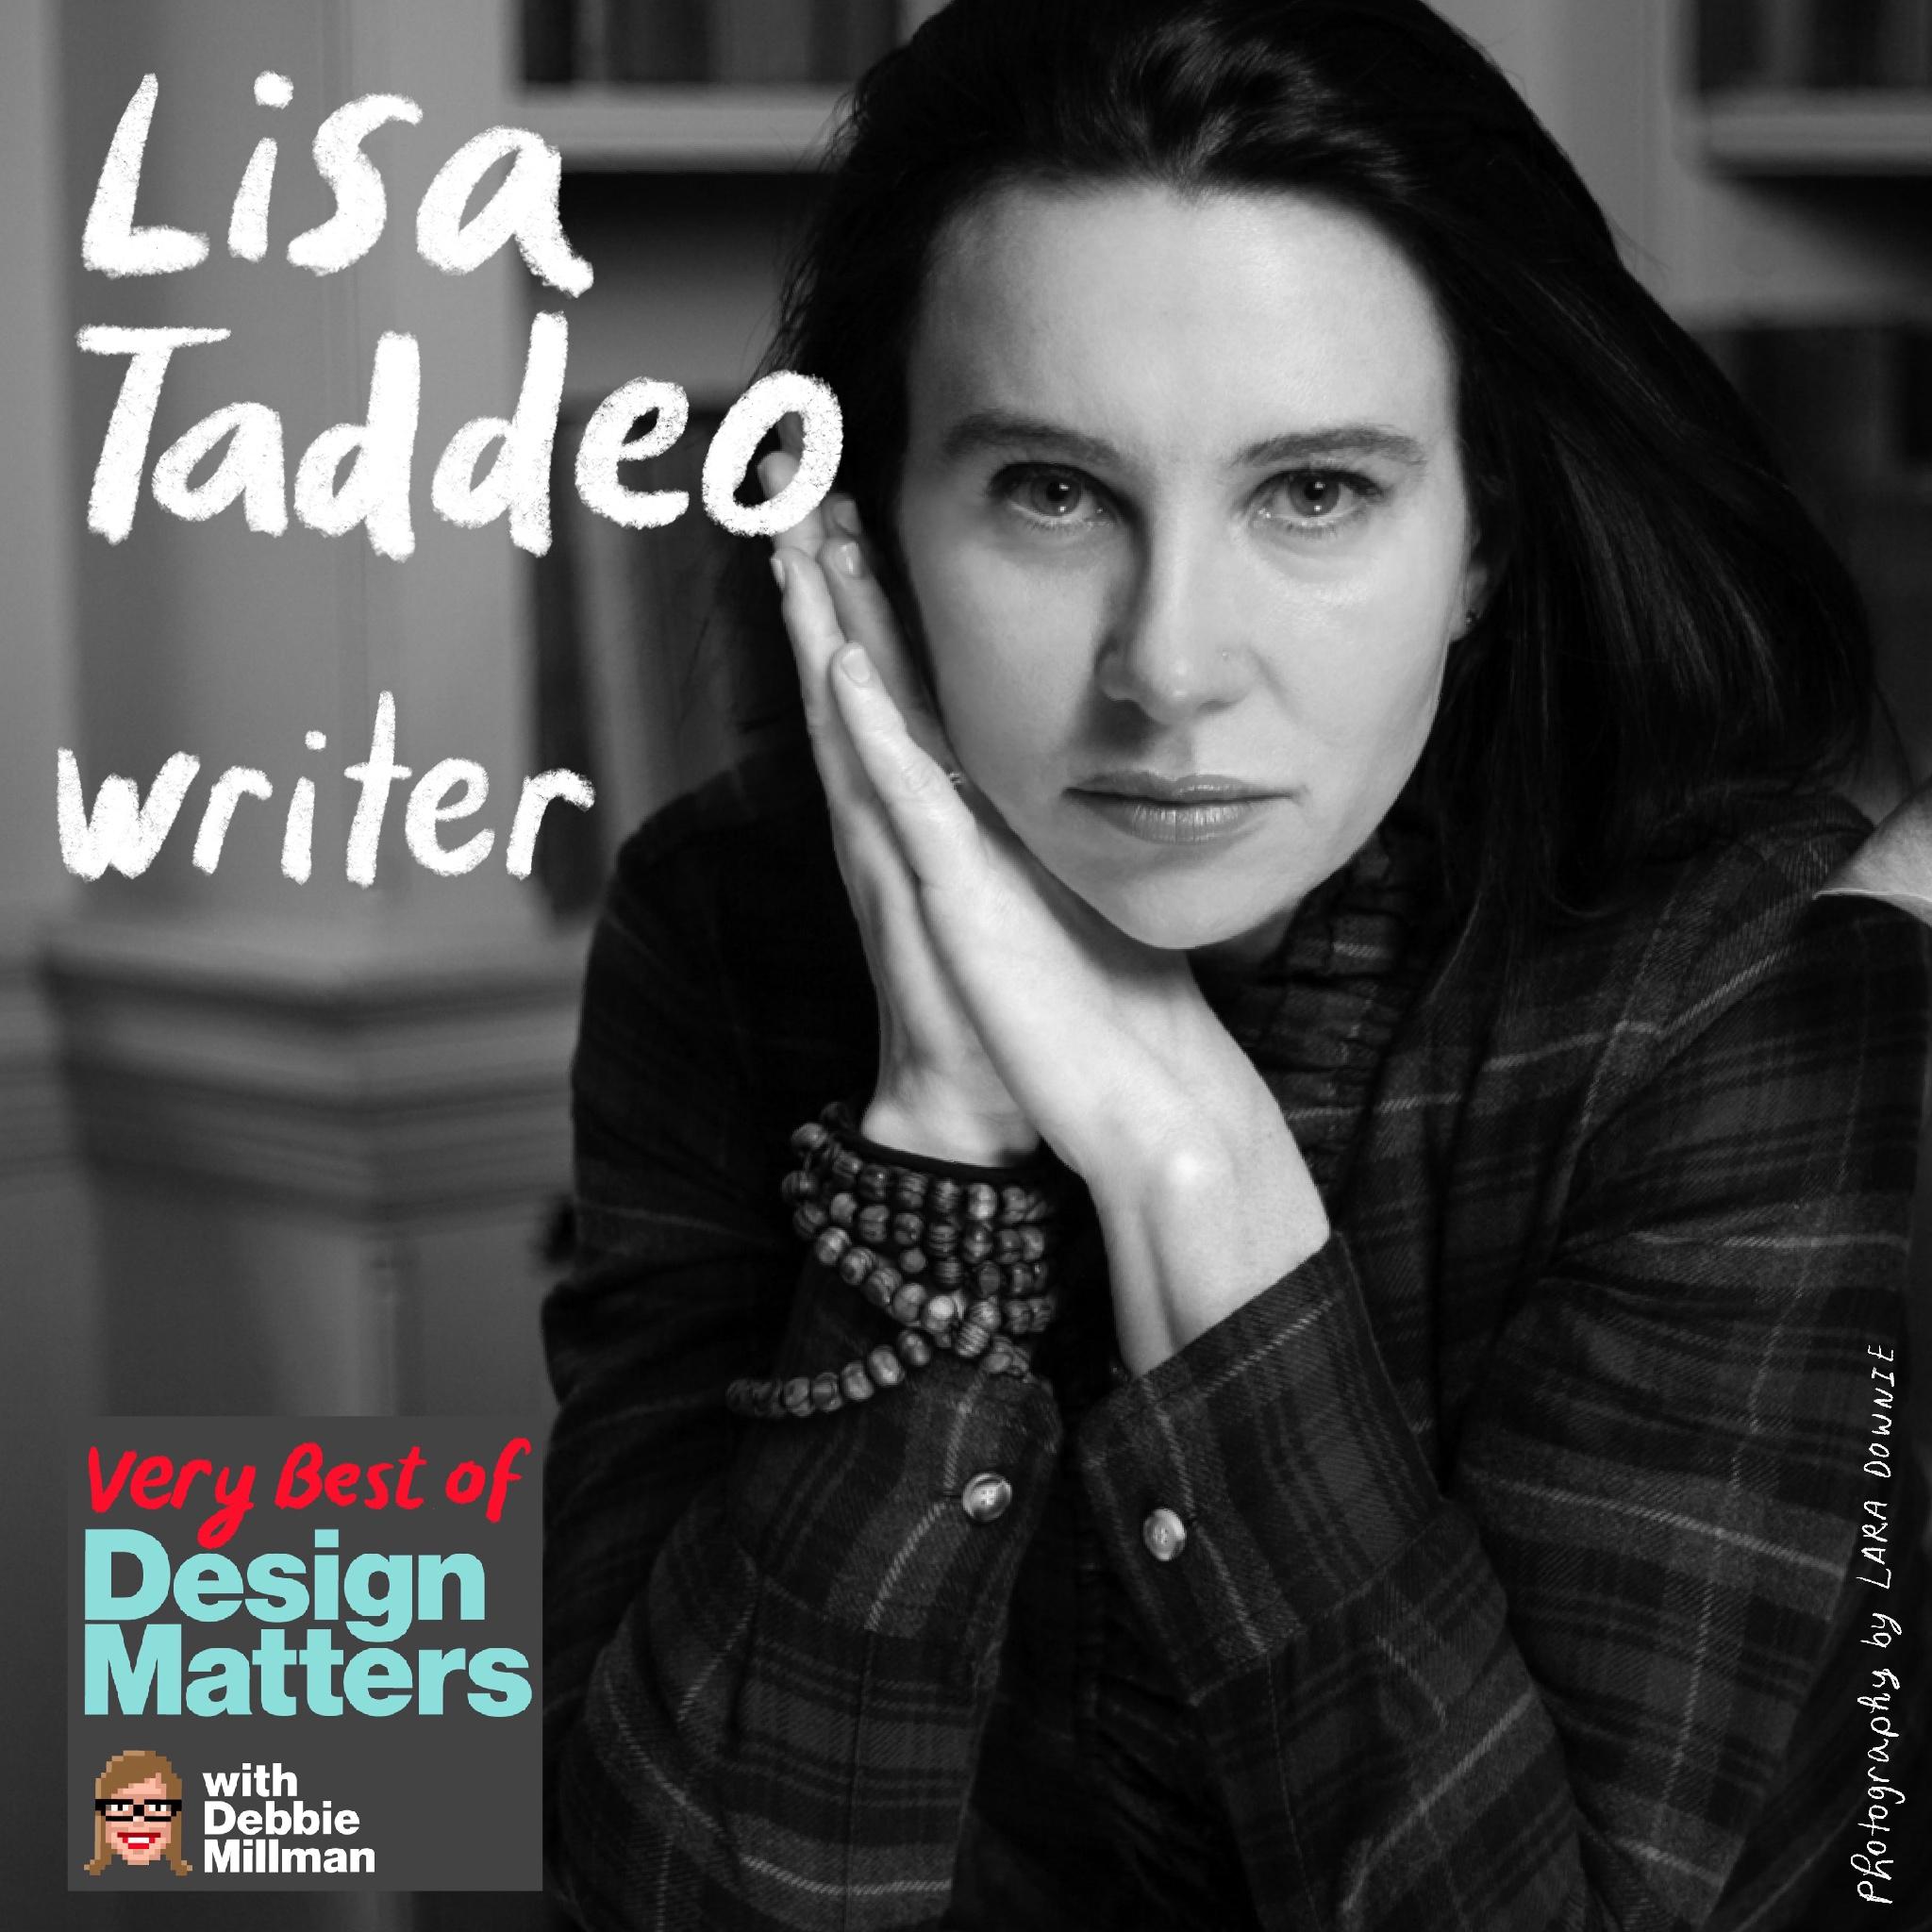 Thumbnail for "Best of Design Matters: Lisa Taddeo".